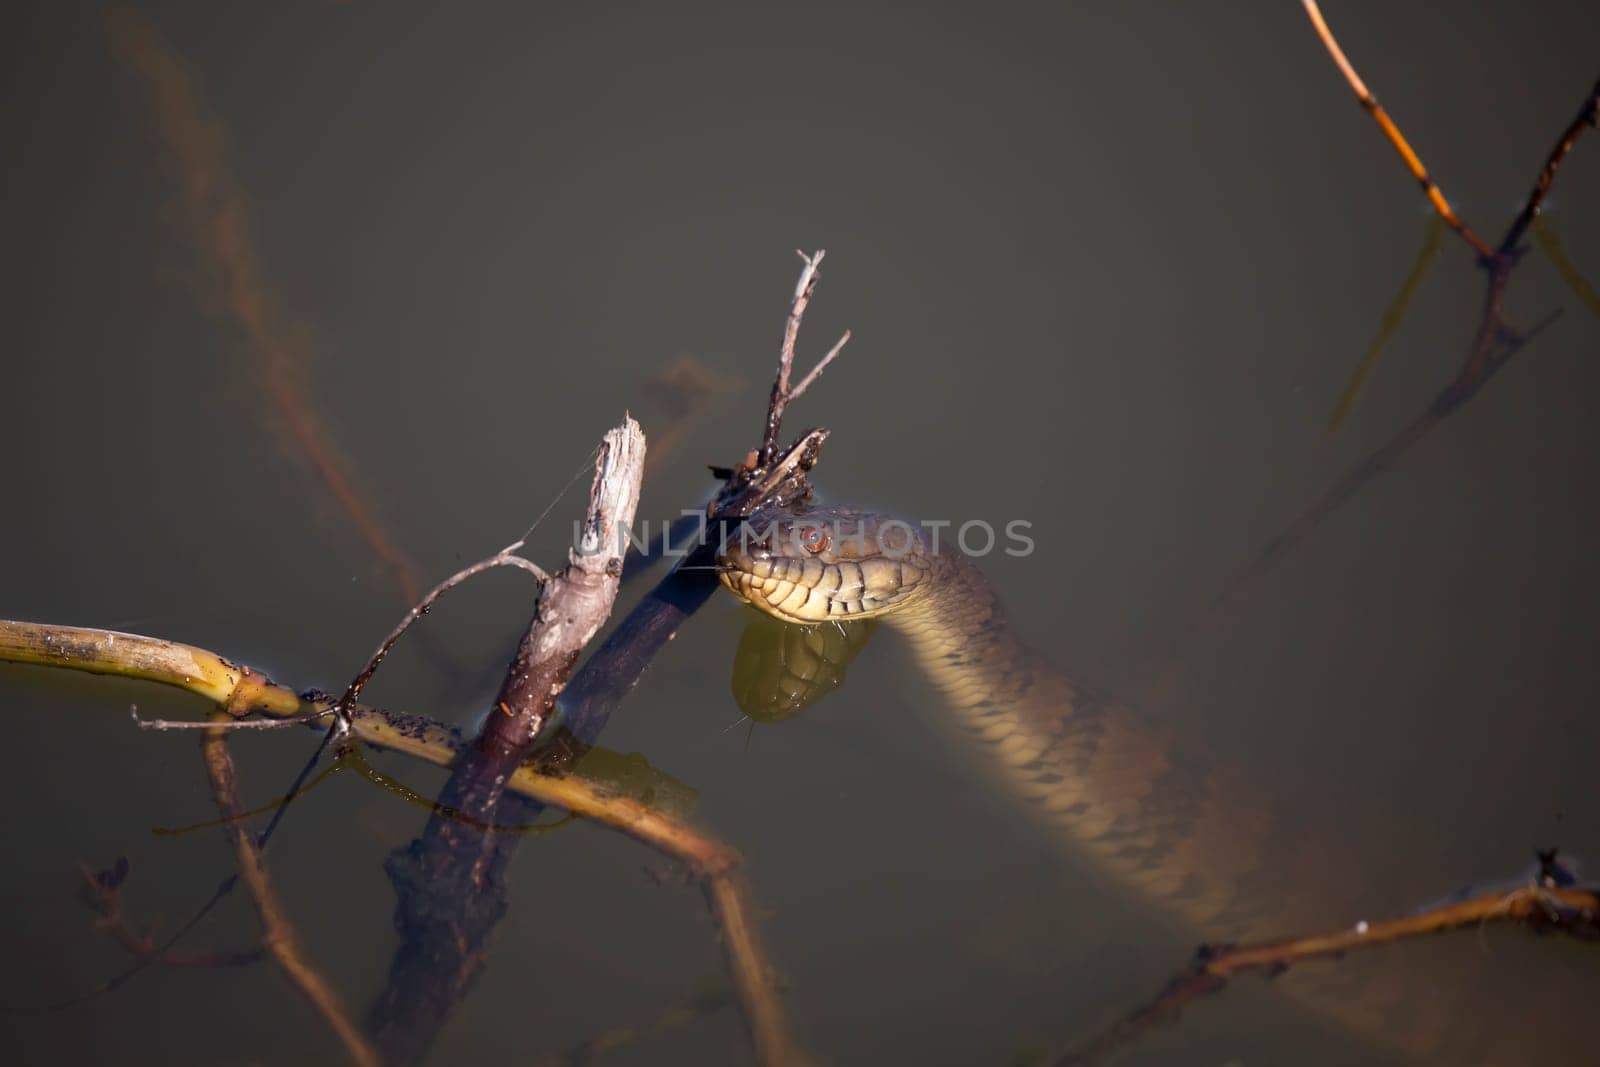 Diamondback Water Snake Flicking Its Tongue by tornado98